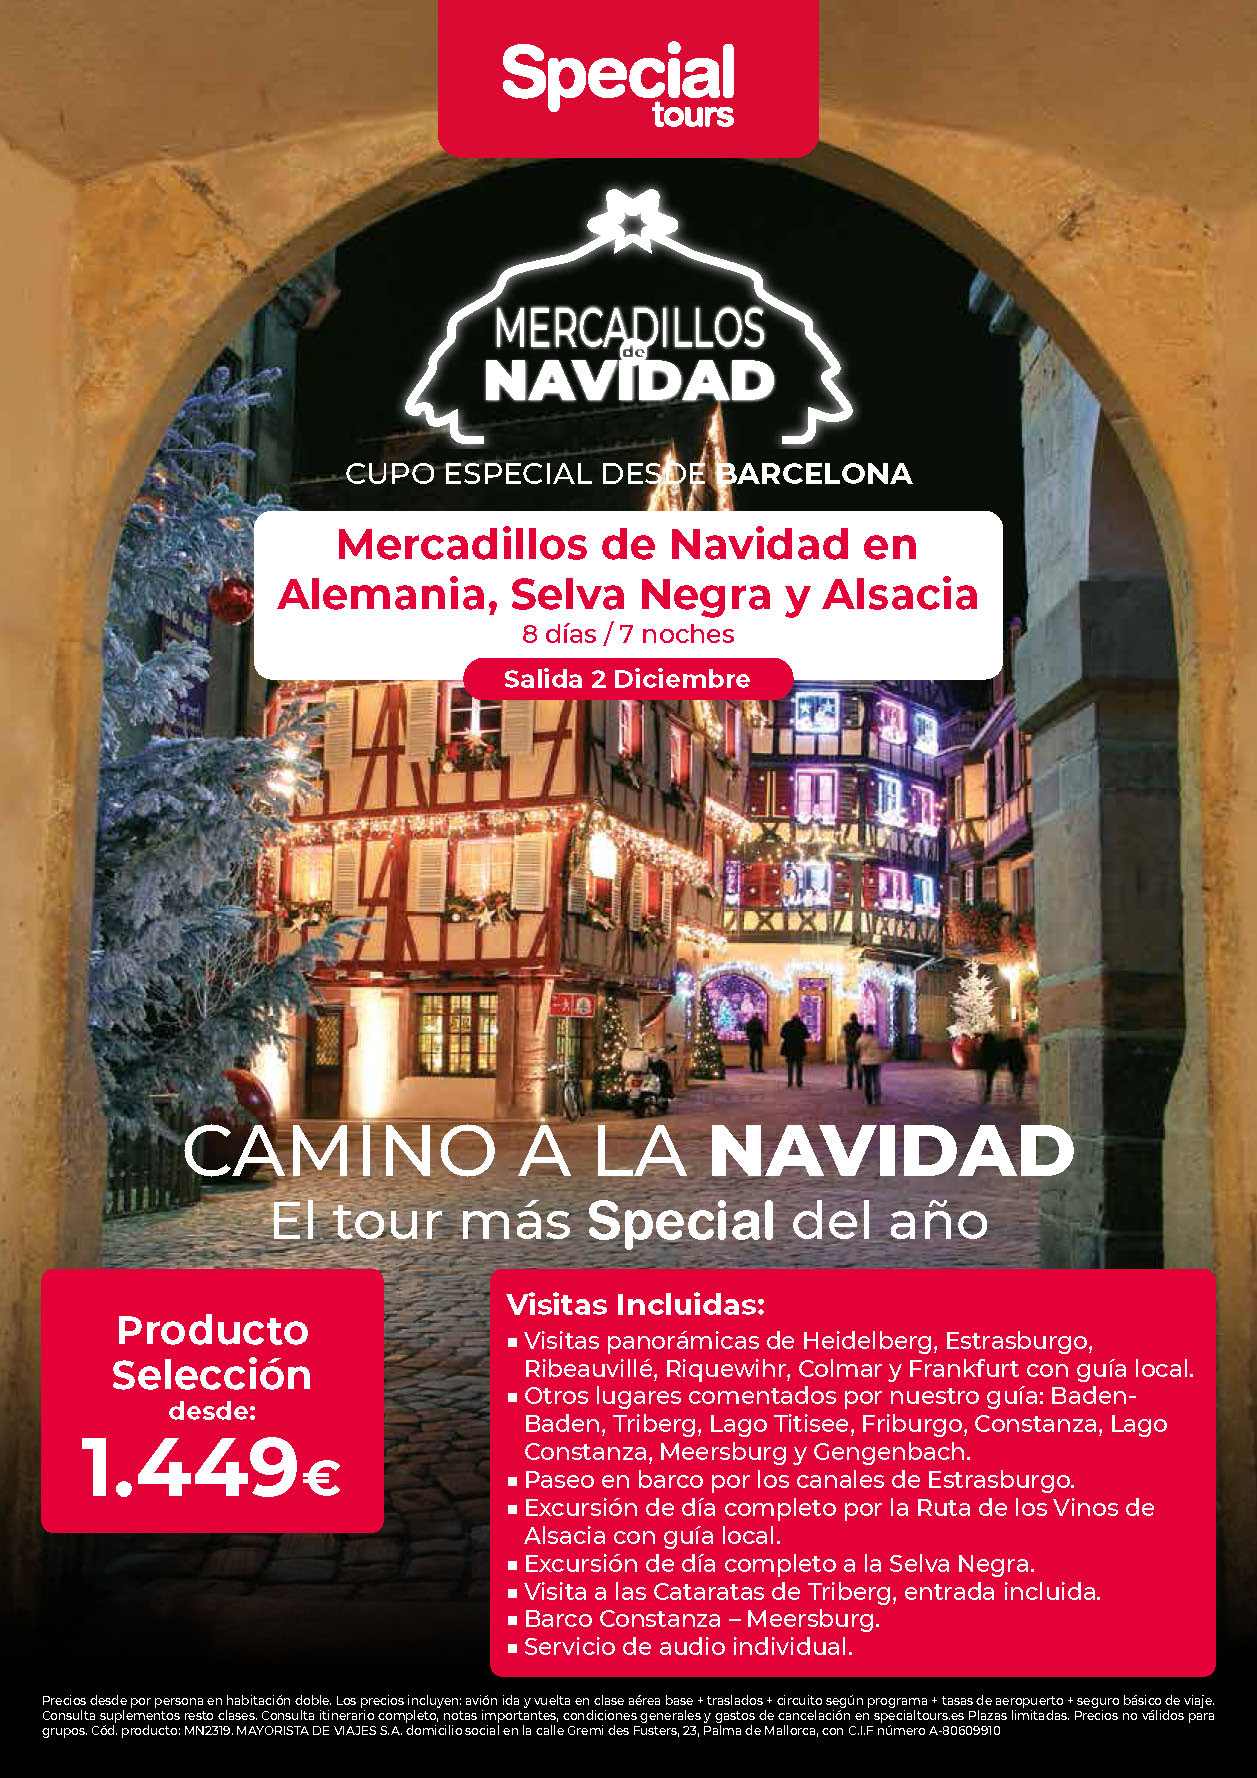 Oferta Special Tours Puente de Diciembre Mercadillos de Navidad en Alemania Selva Negra y Alsacia 8 dias salida 2 Diciembre vuelo directo desde Barcelona